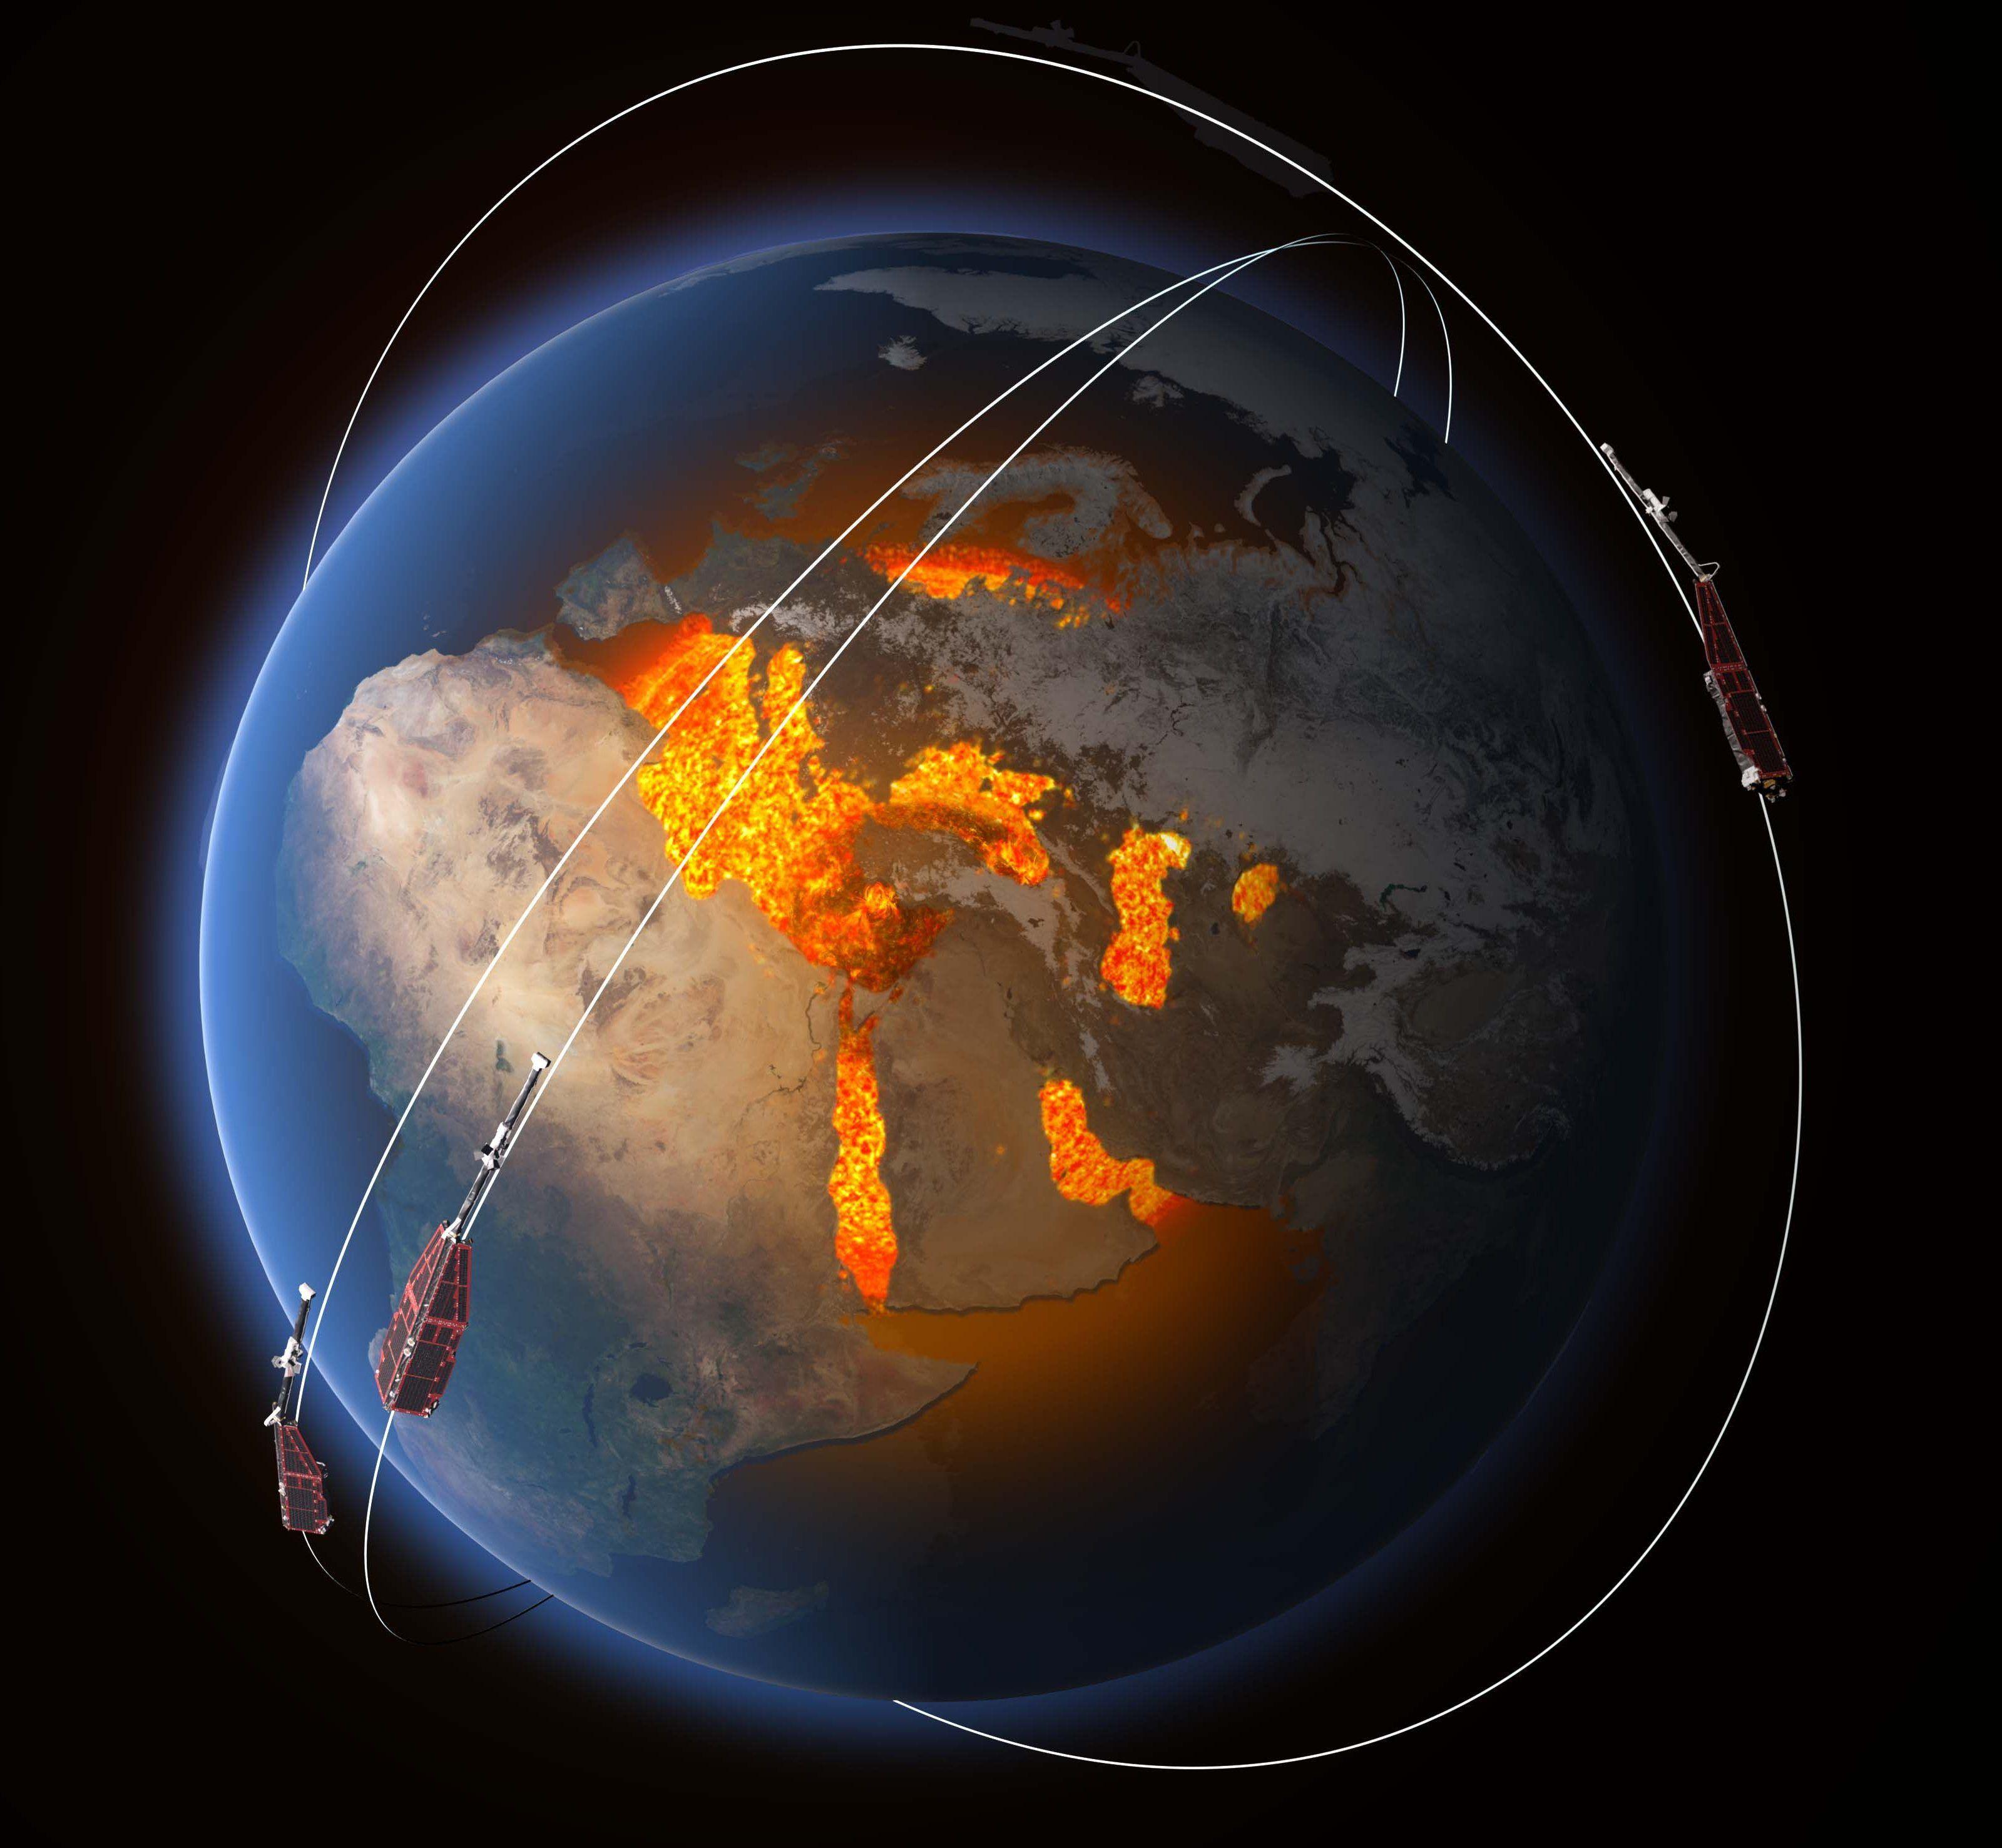 Южно-Атлантическая магнитная аномалия: ослабление магнитного поля Земли пока мешает спутникам, но может предвещать будущий переворот полюсов